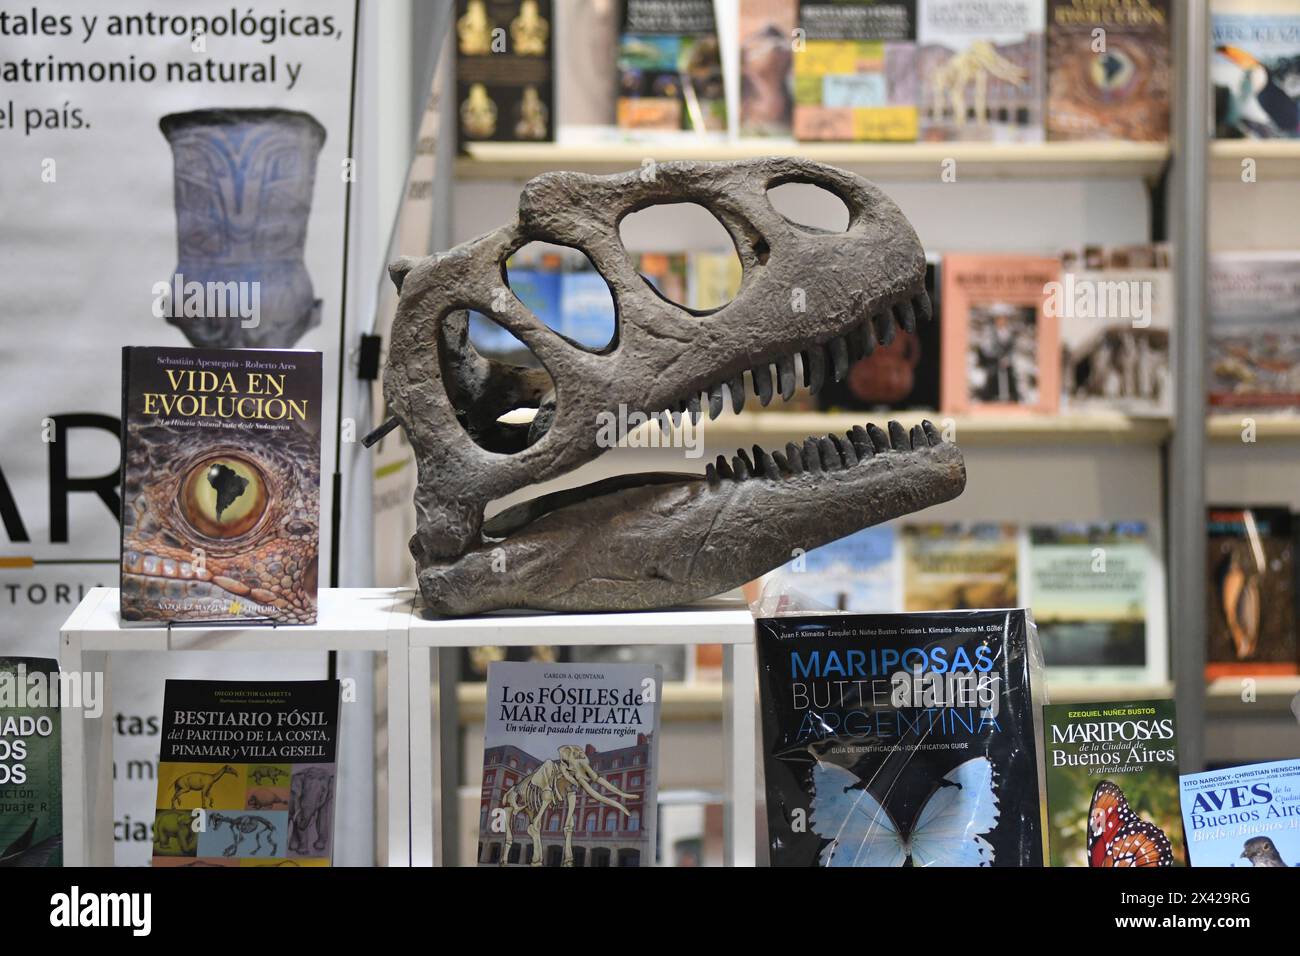 Archäologiebücher stehen mit einem Dinosaurierschädel. 48° Feria Internacional del Libro de Buenos Aires (48° Internationale Buchmesse von Buenos Aires). La Rural, Predio Ferial de Palermo. Argentinien Stockfoto